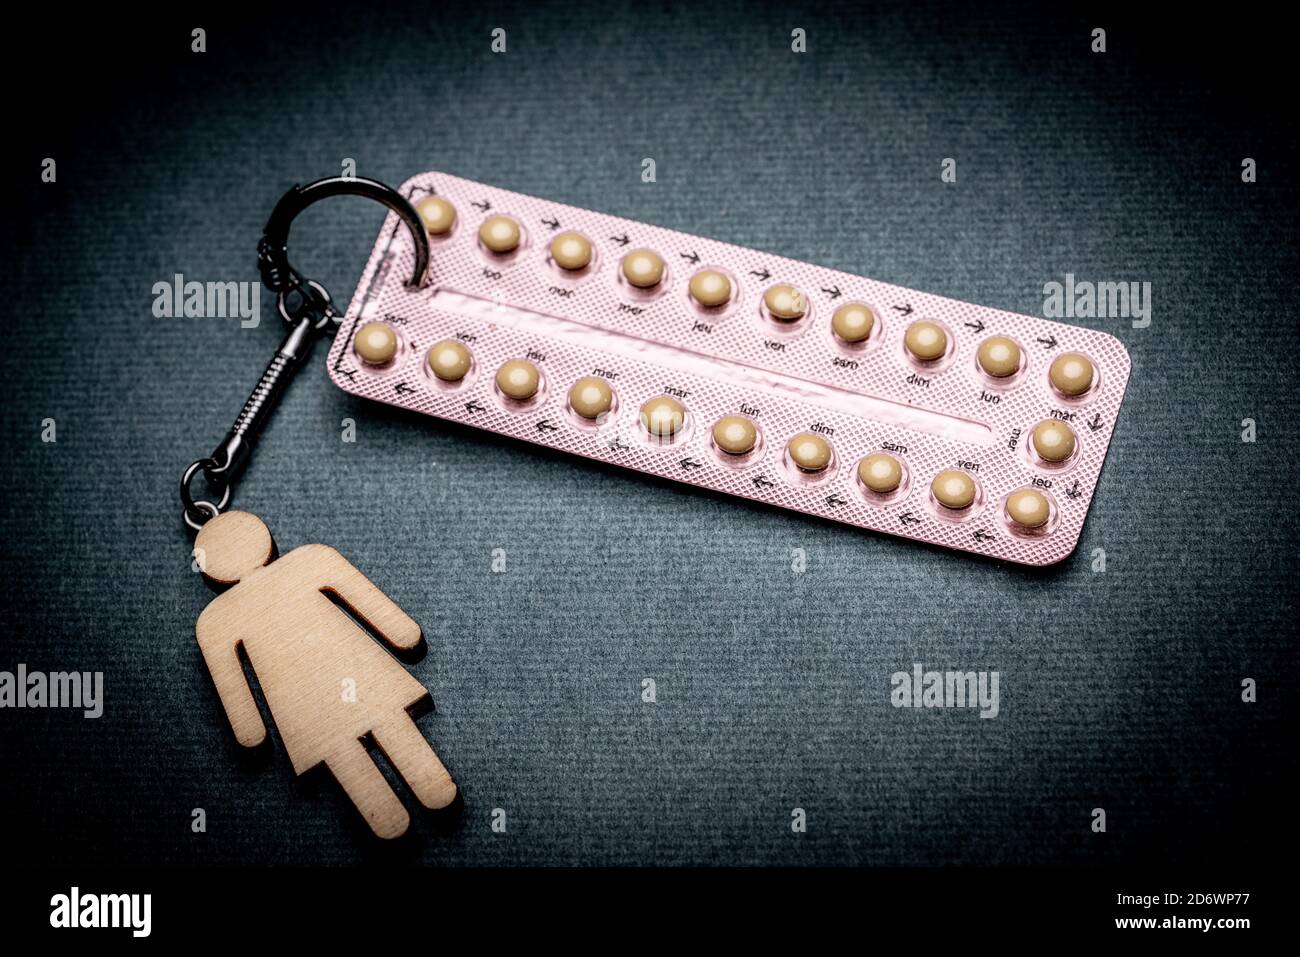 Pille für Verhütungsmittel, die an einem Schlüsselanhänger befestigt ist. Stockfoto